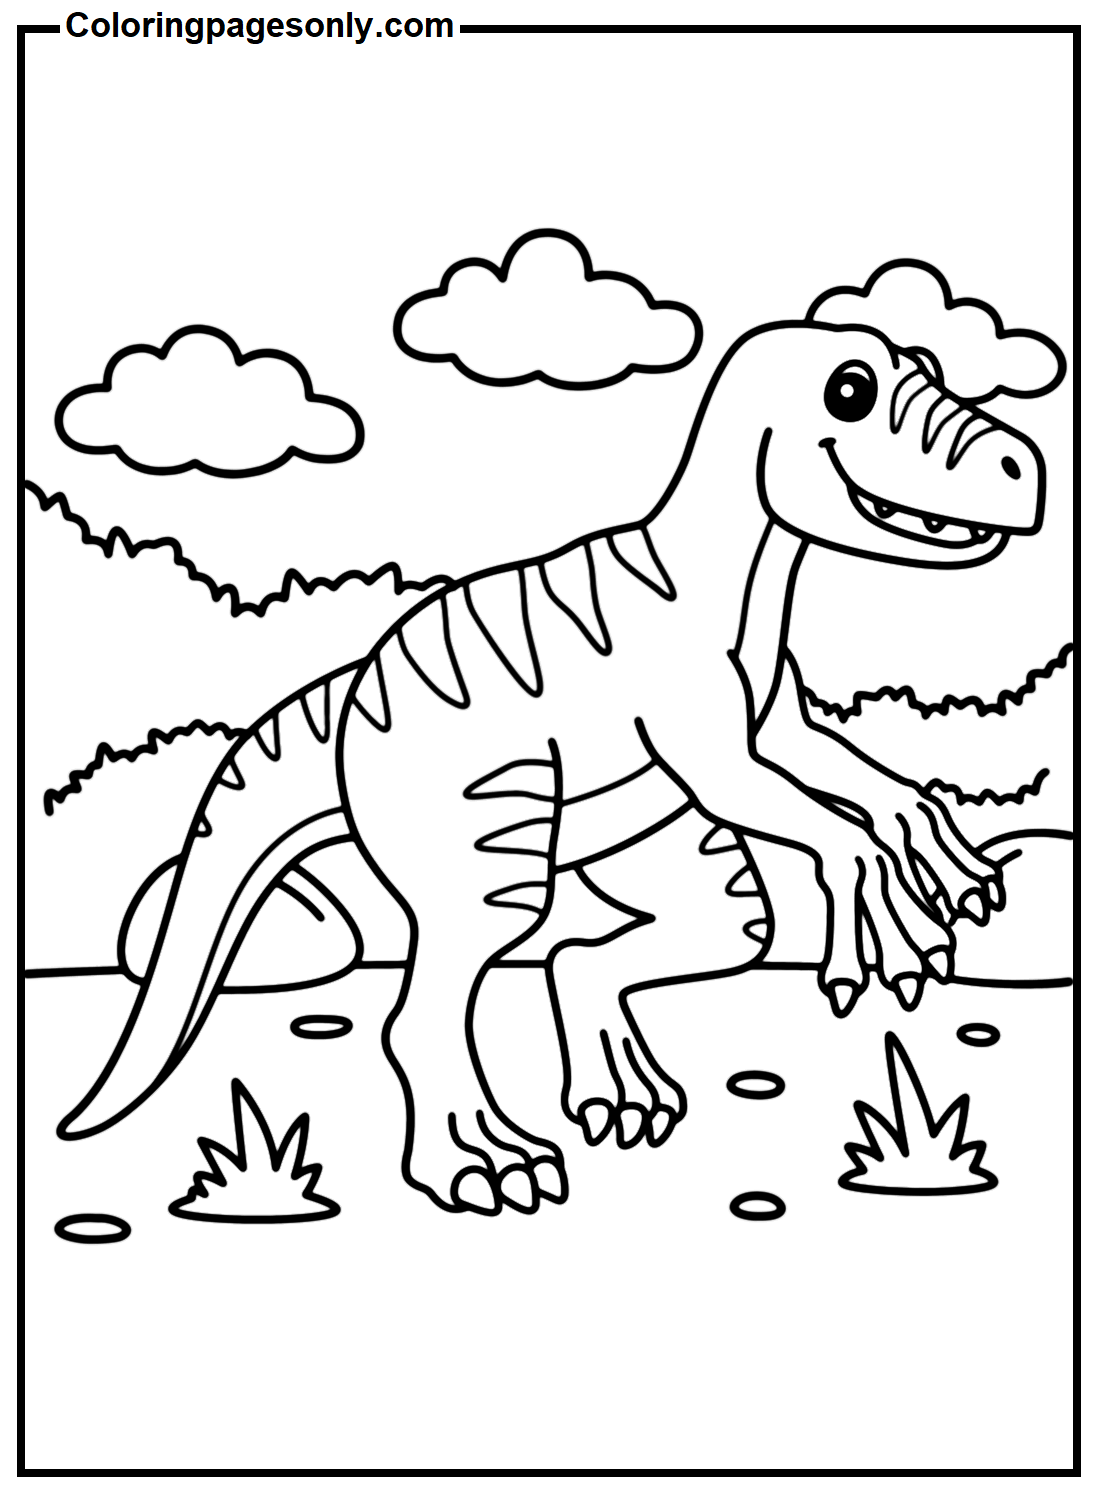 Imagem do Velociraptor do Velociraptor